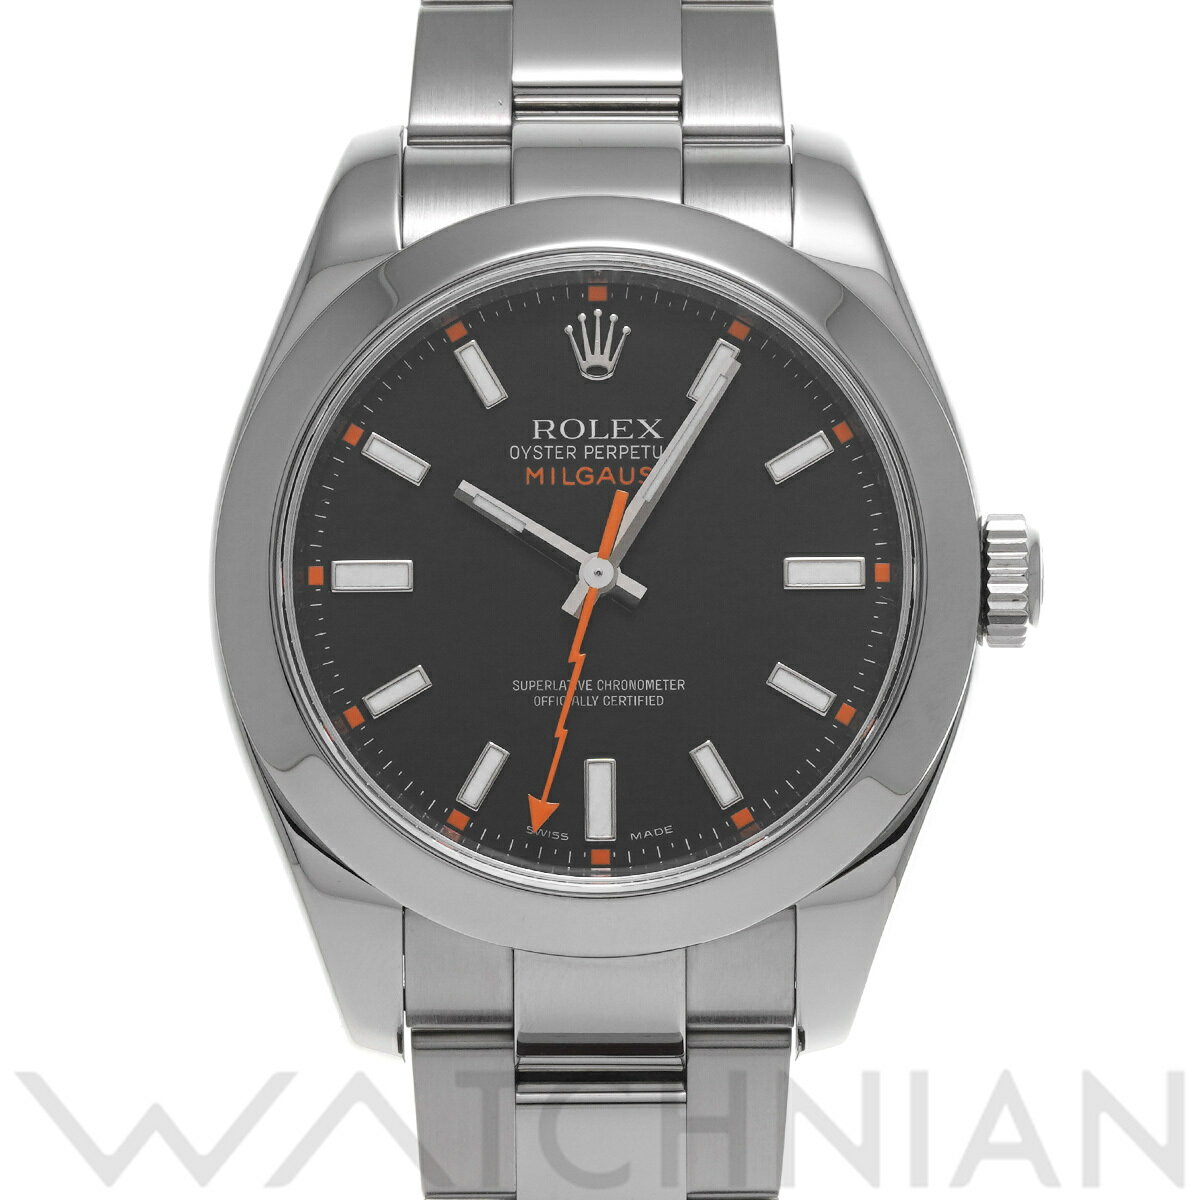 【4種選べるクーポン】【ローン60回払い無金利】【中古】 ロレックス ROLEX ミルガウス 116400 M番(2007年頃製造) ブラック メンズ 腕時計 ロレックス 時計 高級腕時計 ブランド